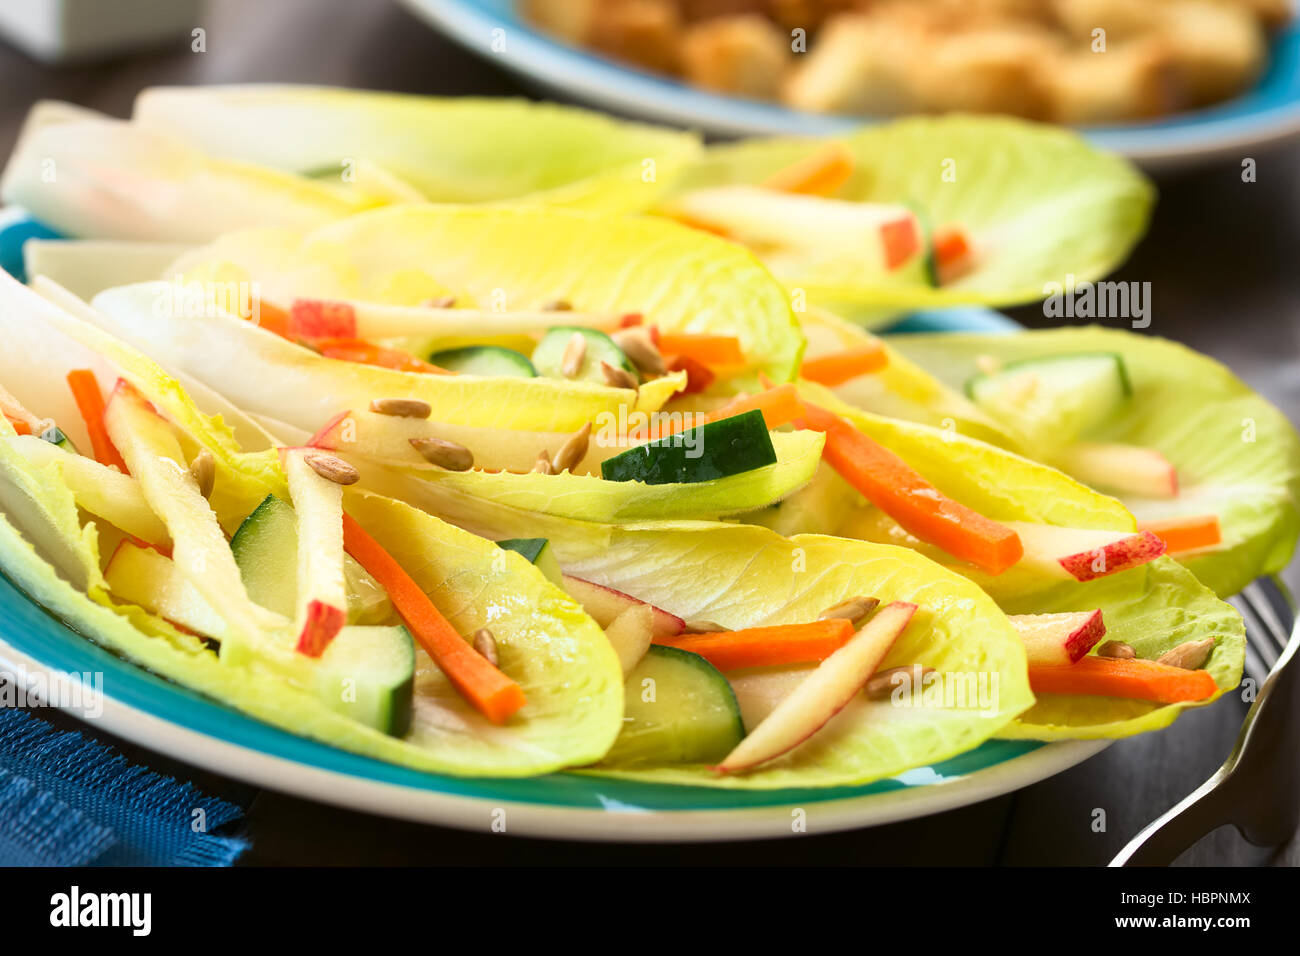 Salade fraîche de feuilles d'endive, concombre, carotte, pomme et graines de tournesol, photographié avec une lumière naturelle (Selective Focus) Banque D'Images